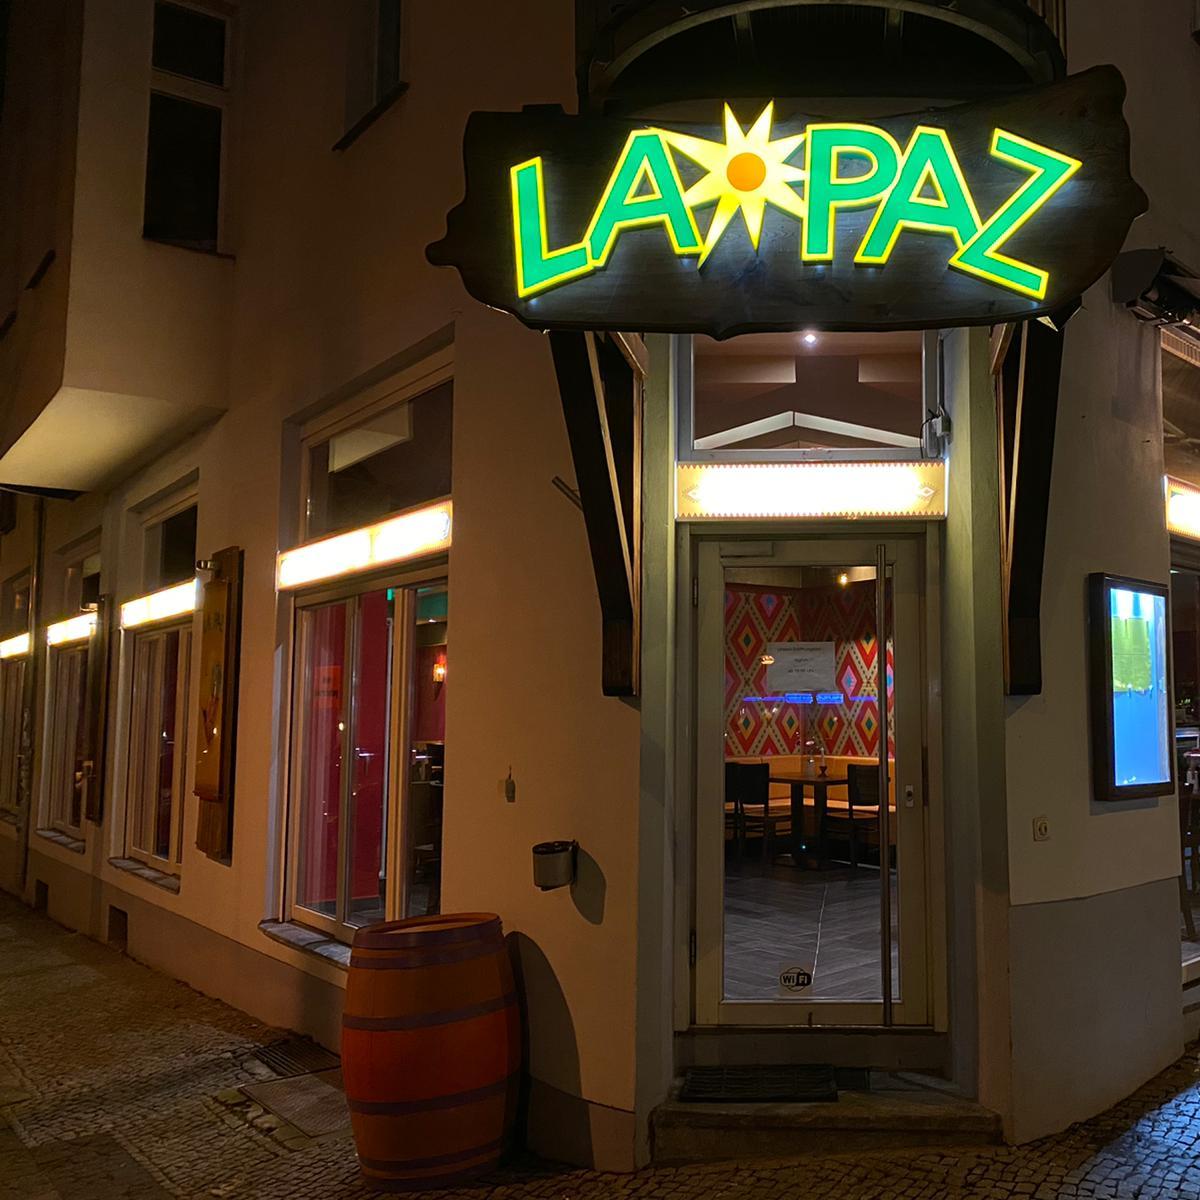 Restaurant "La Paz - Prenzlauer Berg" in Berlin